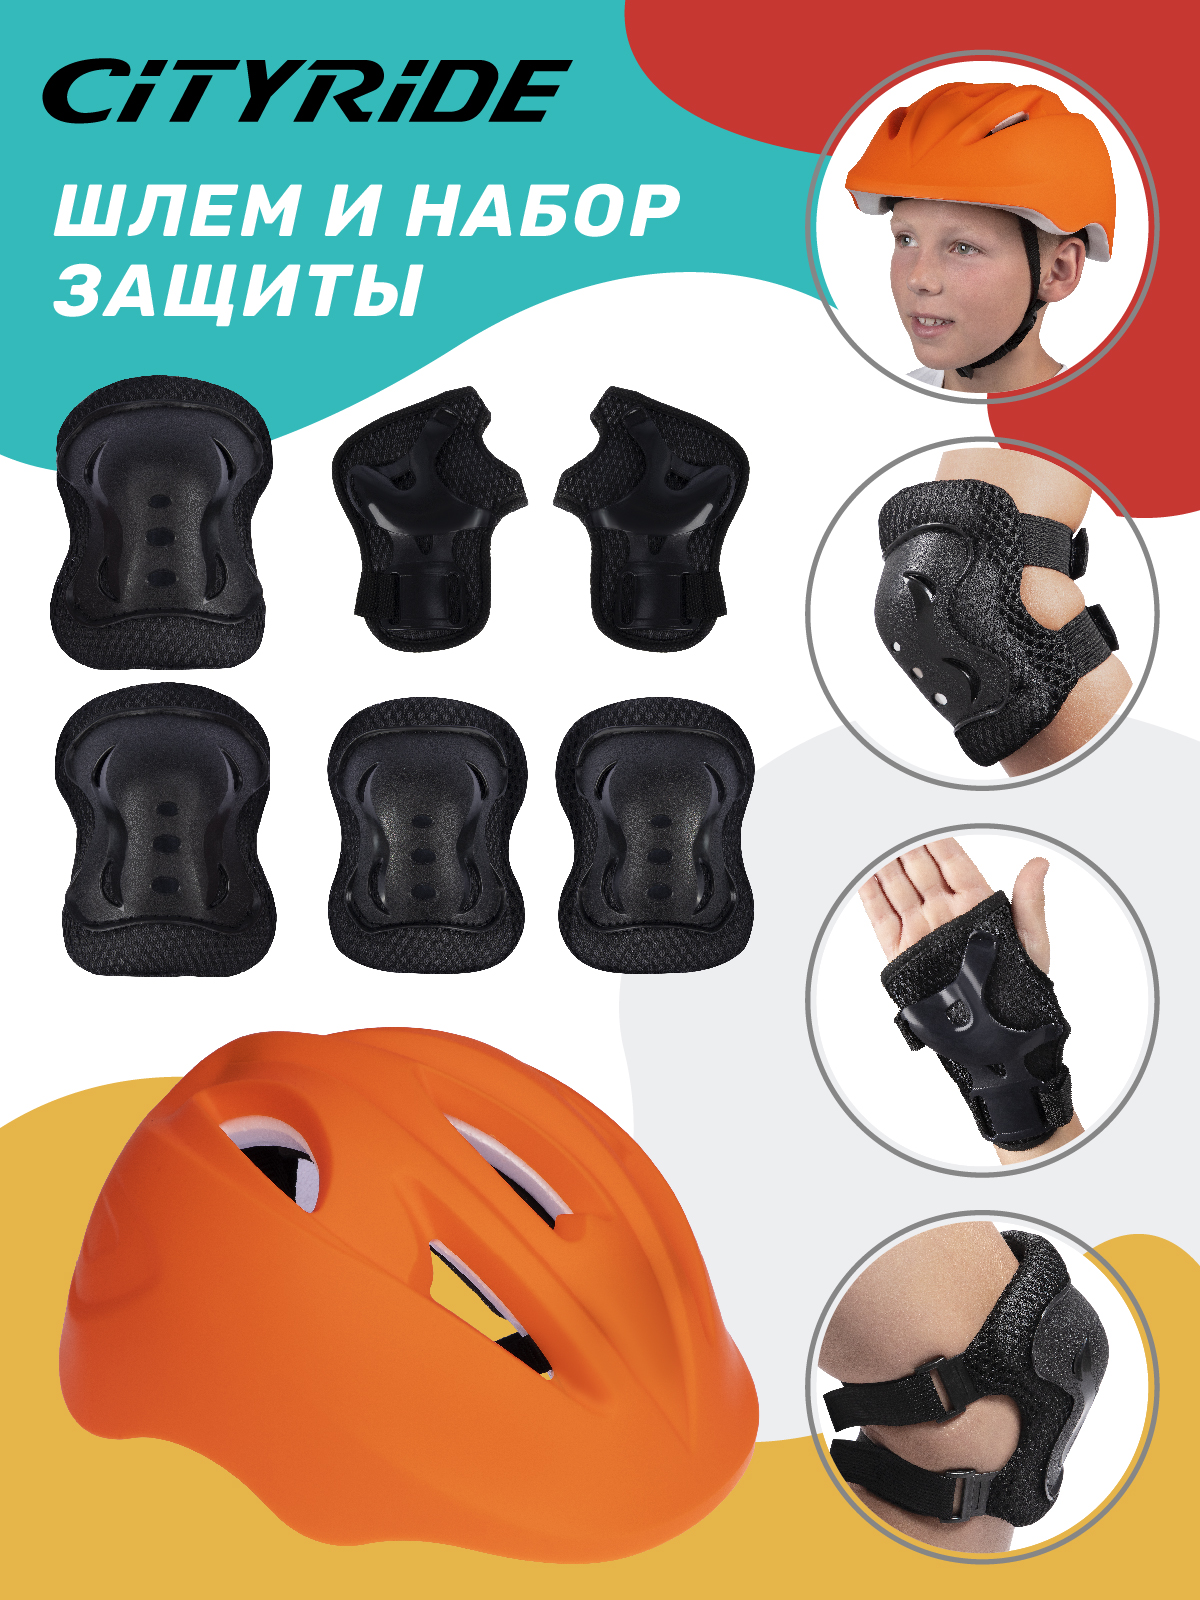 Комплект шлем, спортивная защита для детей ТМ City Ride, размер универсальный, JB0211562 скейтборд city ride дека клен 9 слоев размер 31х8 колеса pu abec 7 jb4200186